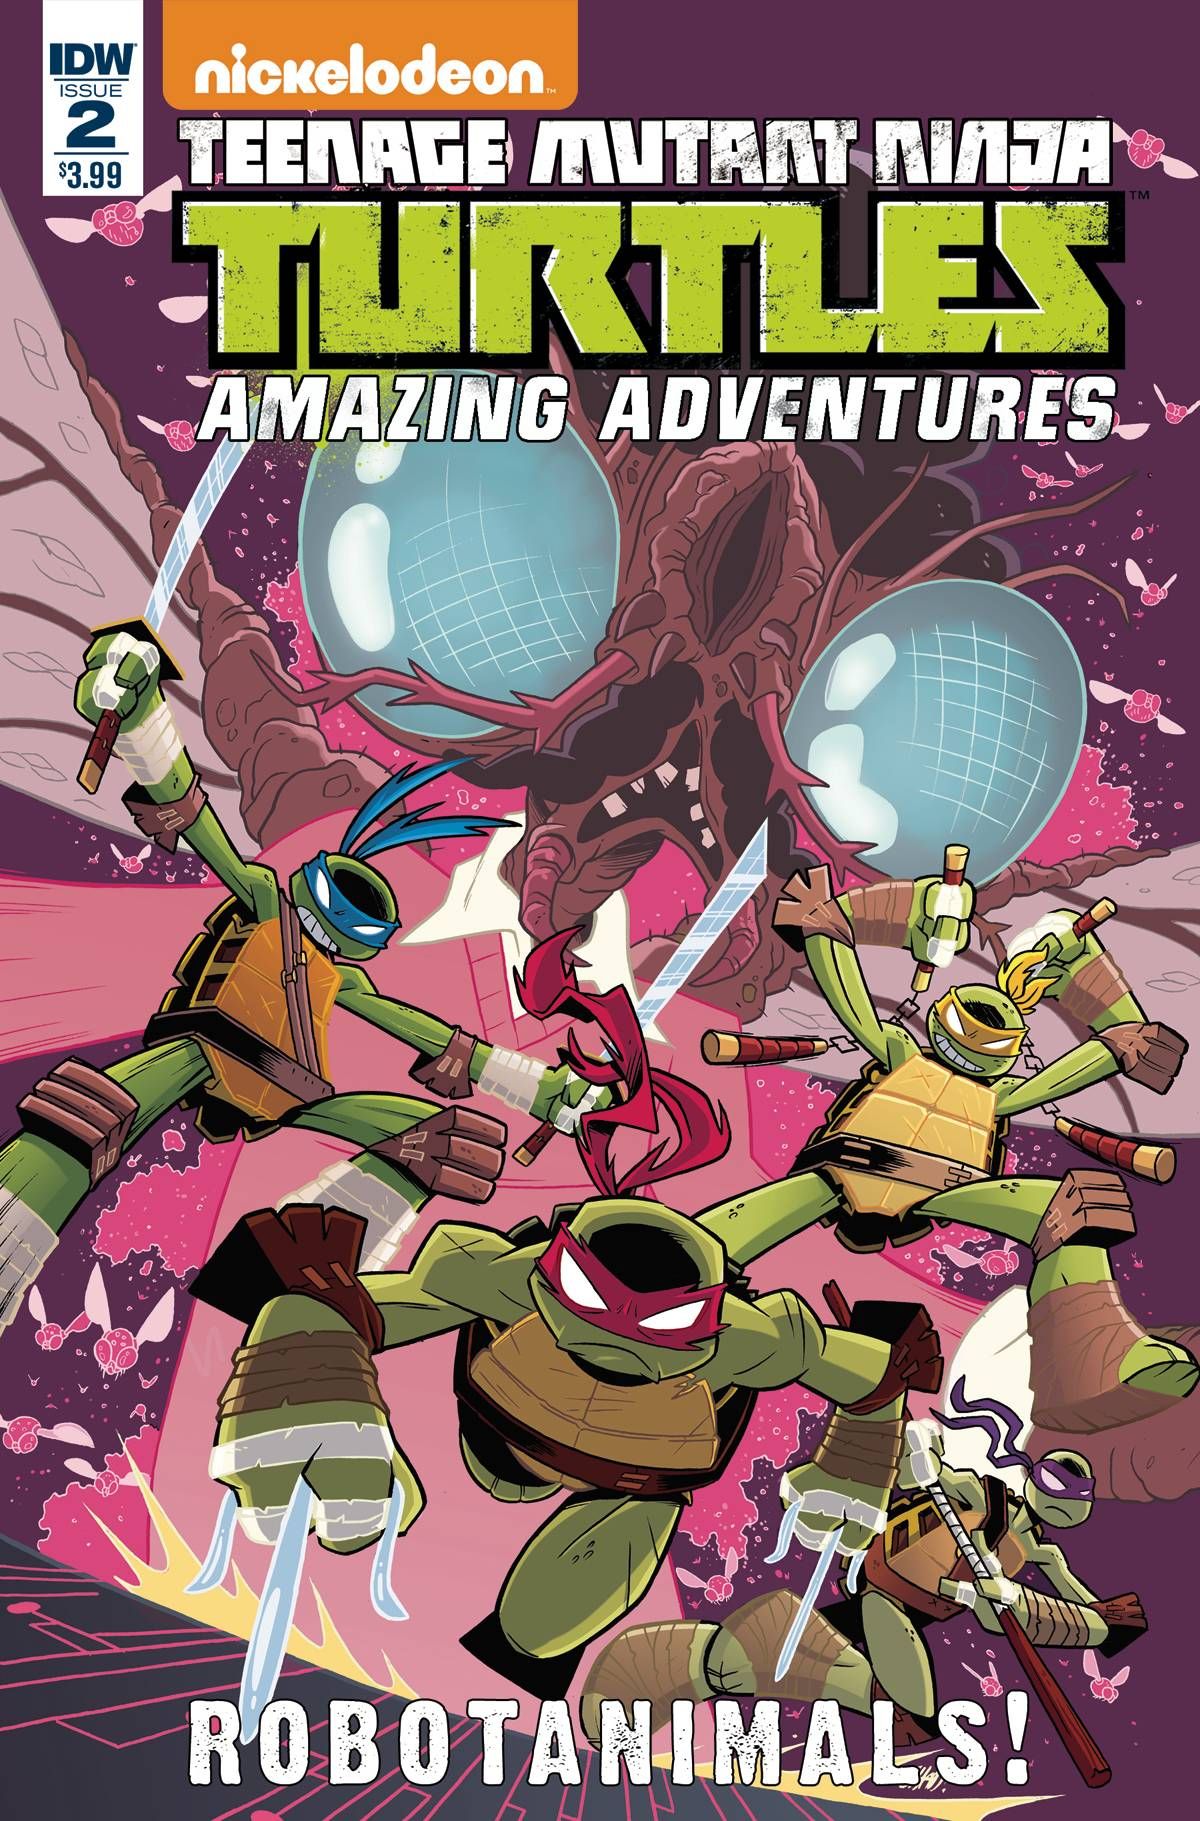 Teenage Mutant Ninja Turtles: Amazing Adventures - Robotanimals #2 Comic